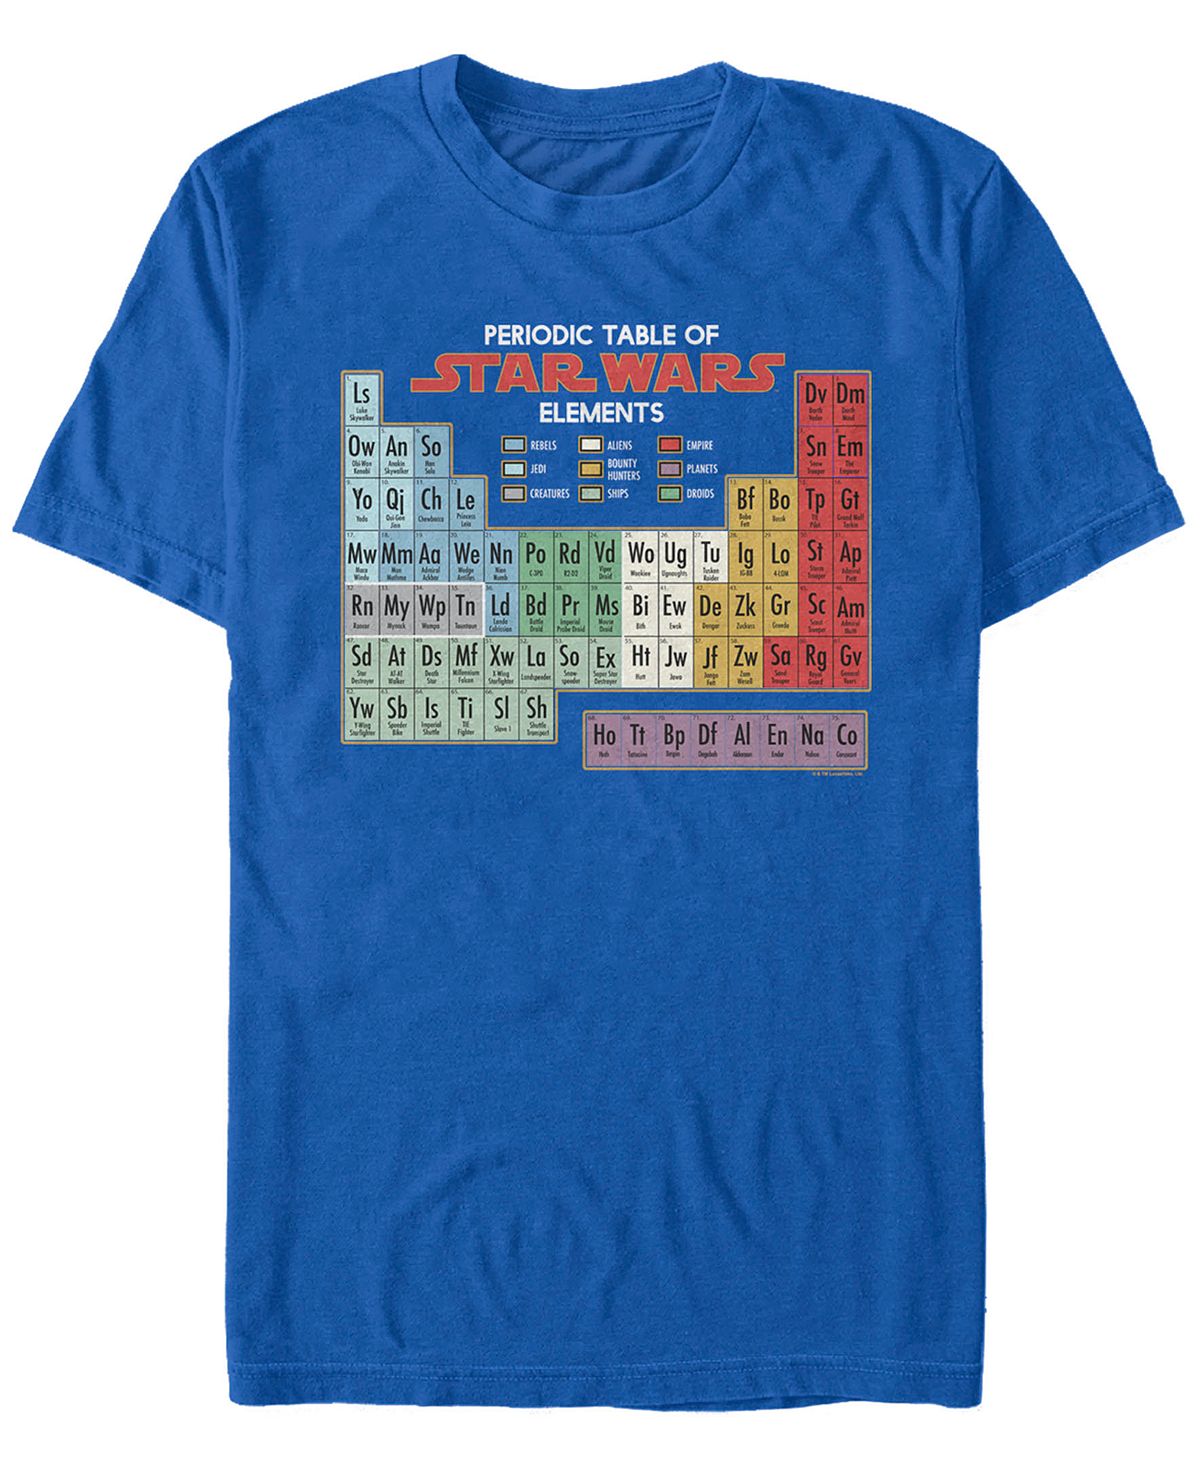 Мужская футболка с коротким рукавом «периодическая таблица элементов» Fifth Sun периодическая таблица элементов акриловая вывеска периодическая таблица элементов кристальный элемент обучающий блок периодические п